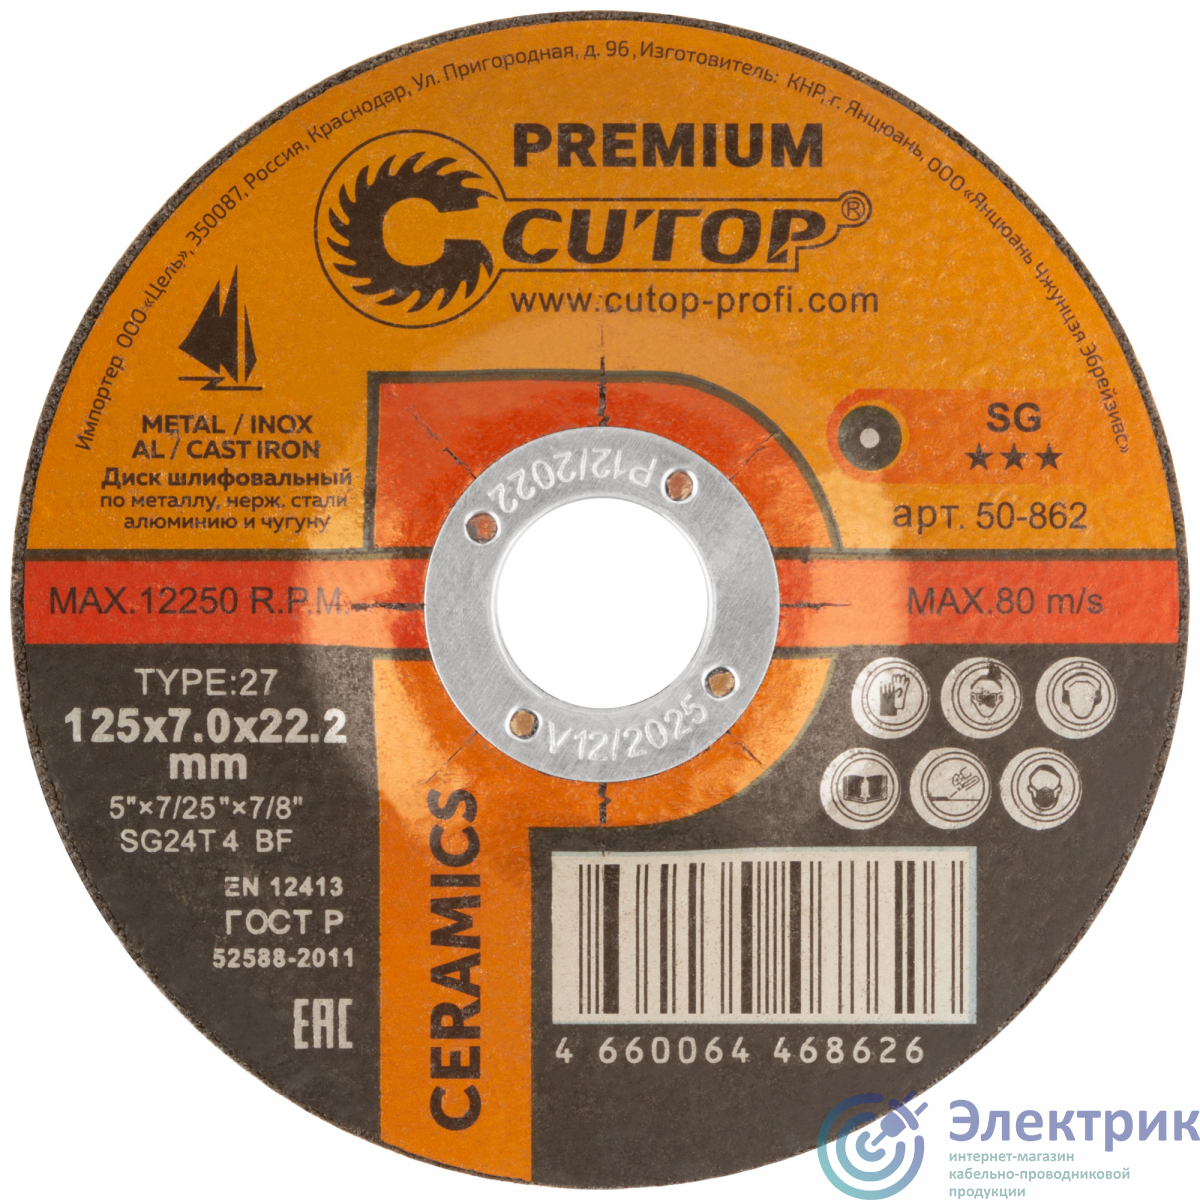 Диск шлифовальный по металлу, нержавеющей стали и чугуну Cutop CERAMICS, серия Premium, T27-125 х 7 х 22,2 мм